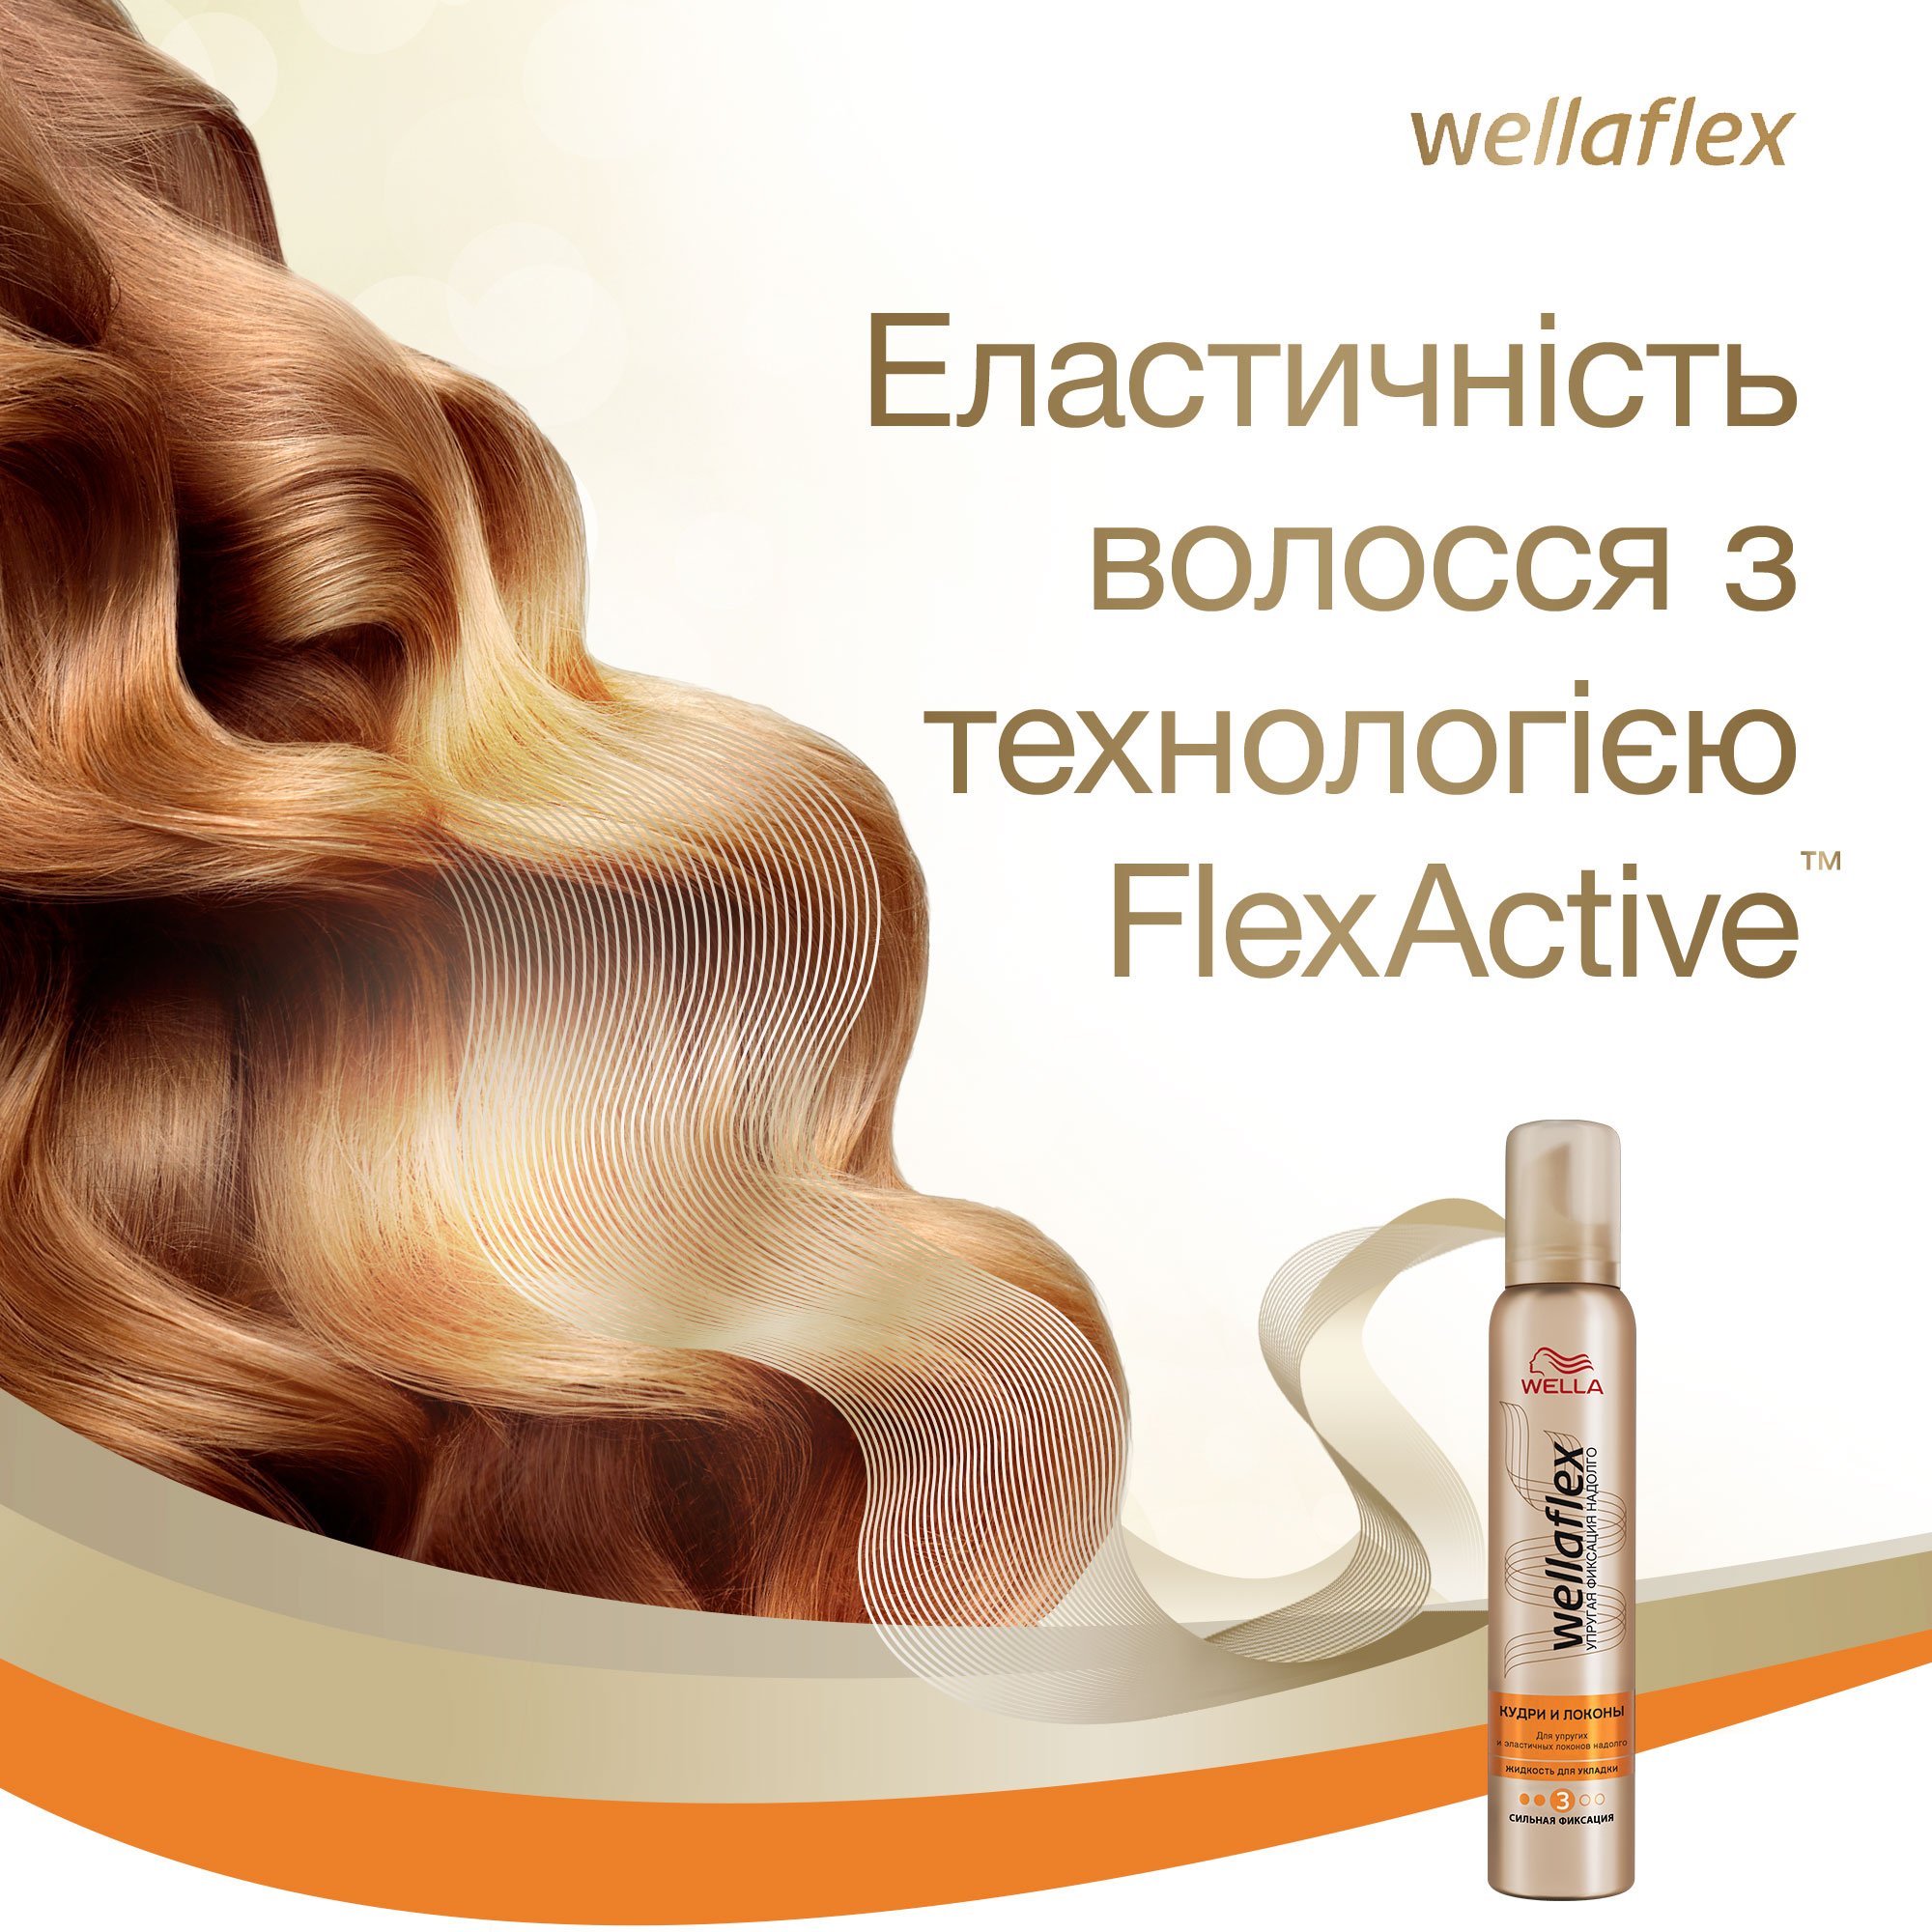 Мусс для волос Wellaflex Кудри и локоны Сильной фиксации, 200 мл - фото 5